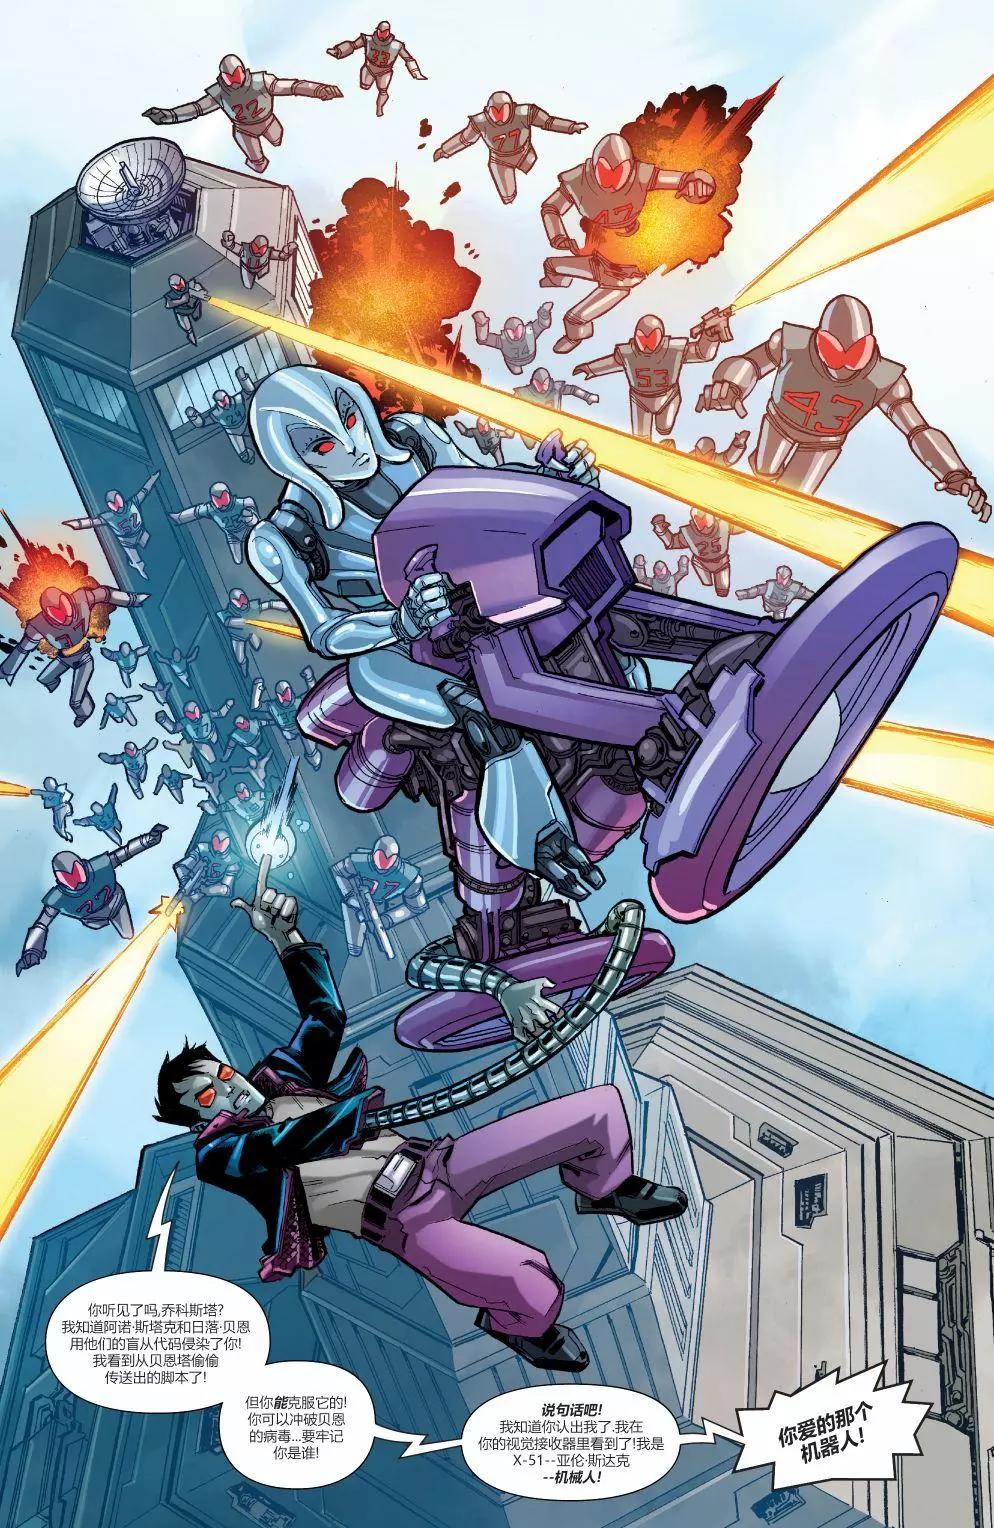 鋼鐵俠2020 - 機械人2020#1 - 4